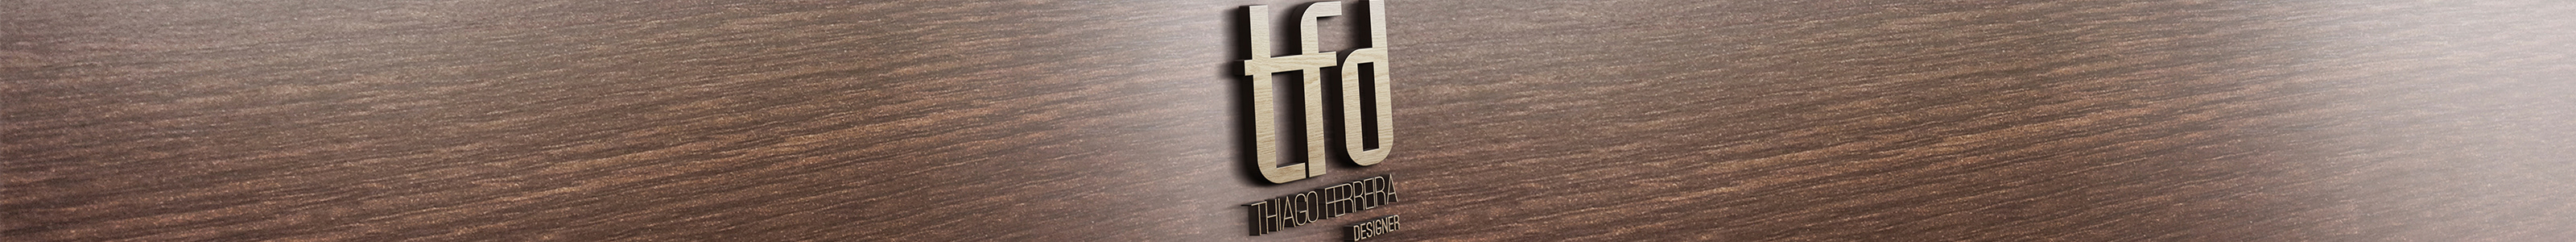 Thiago Ferreiras profilbanner